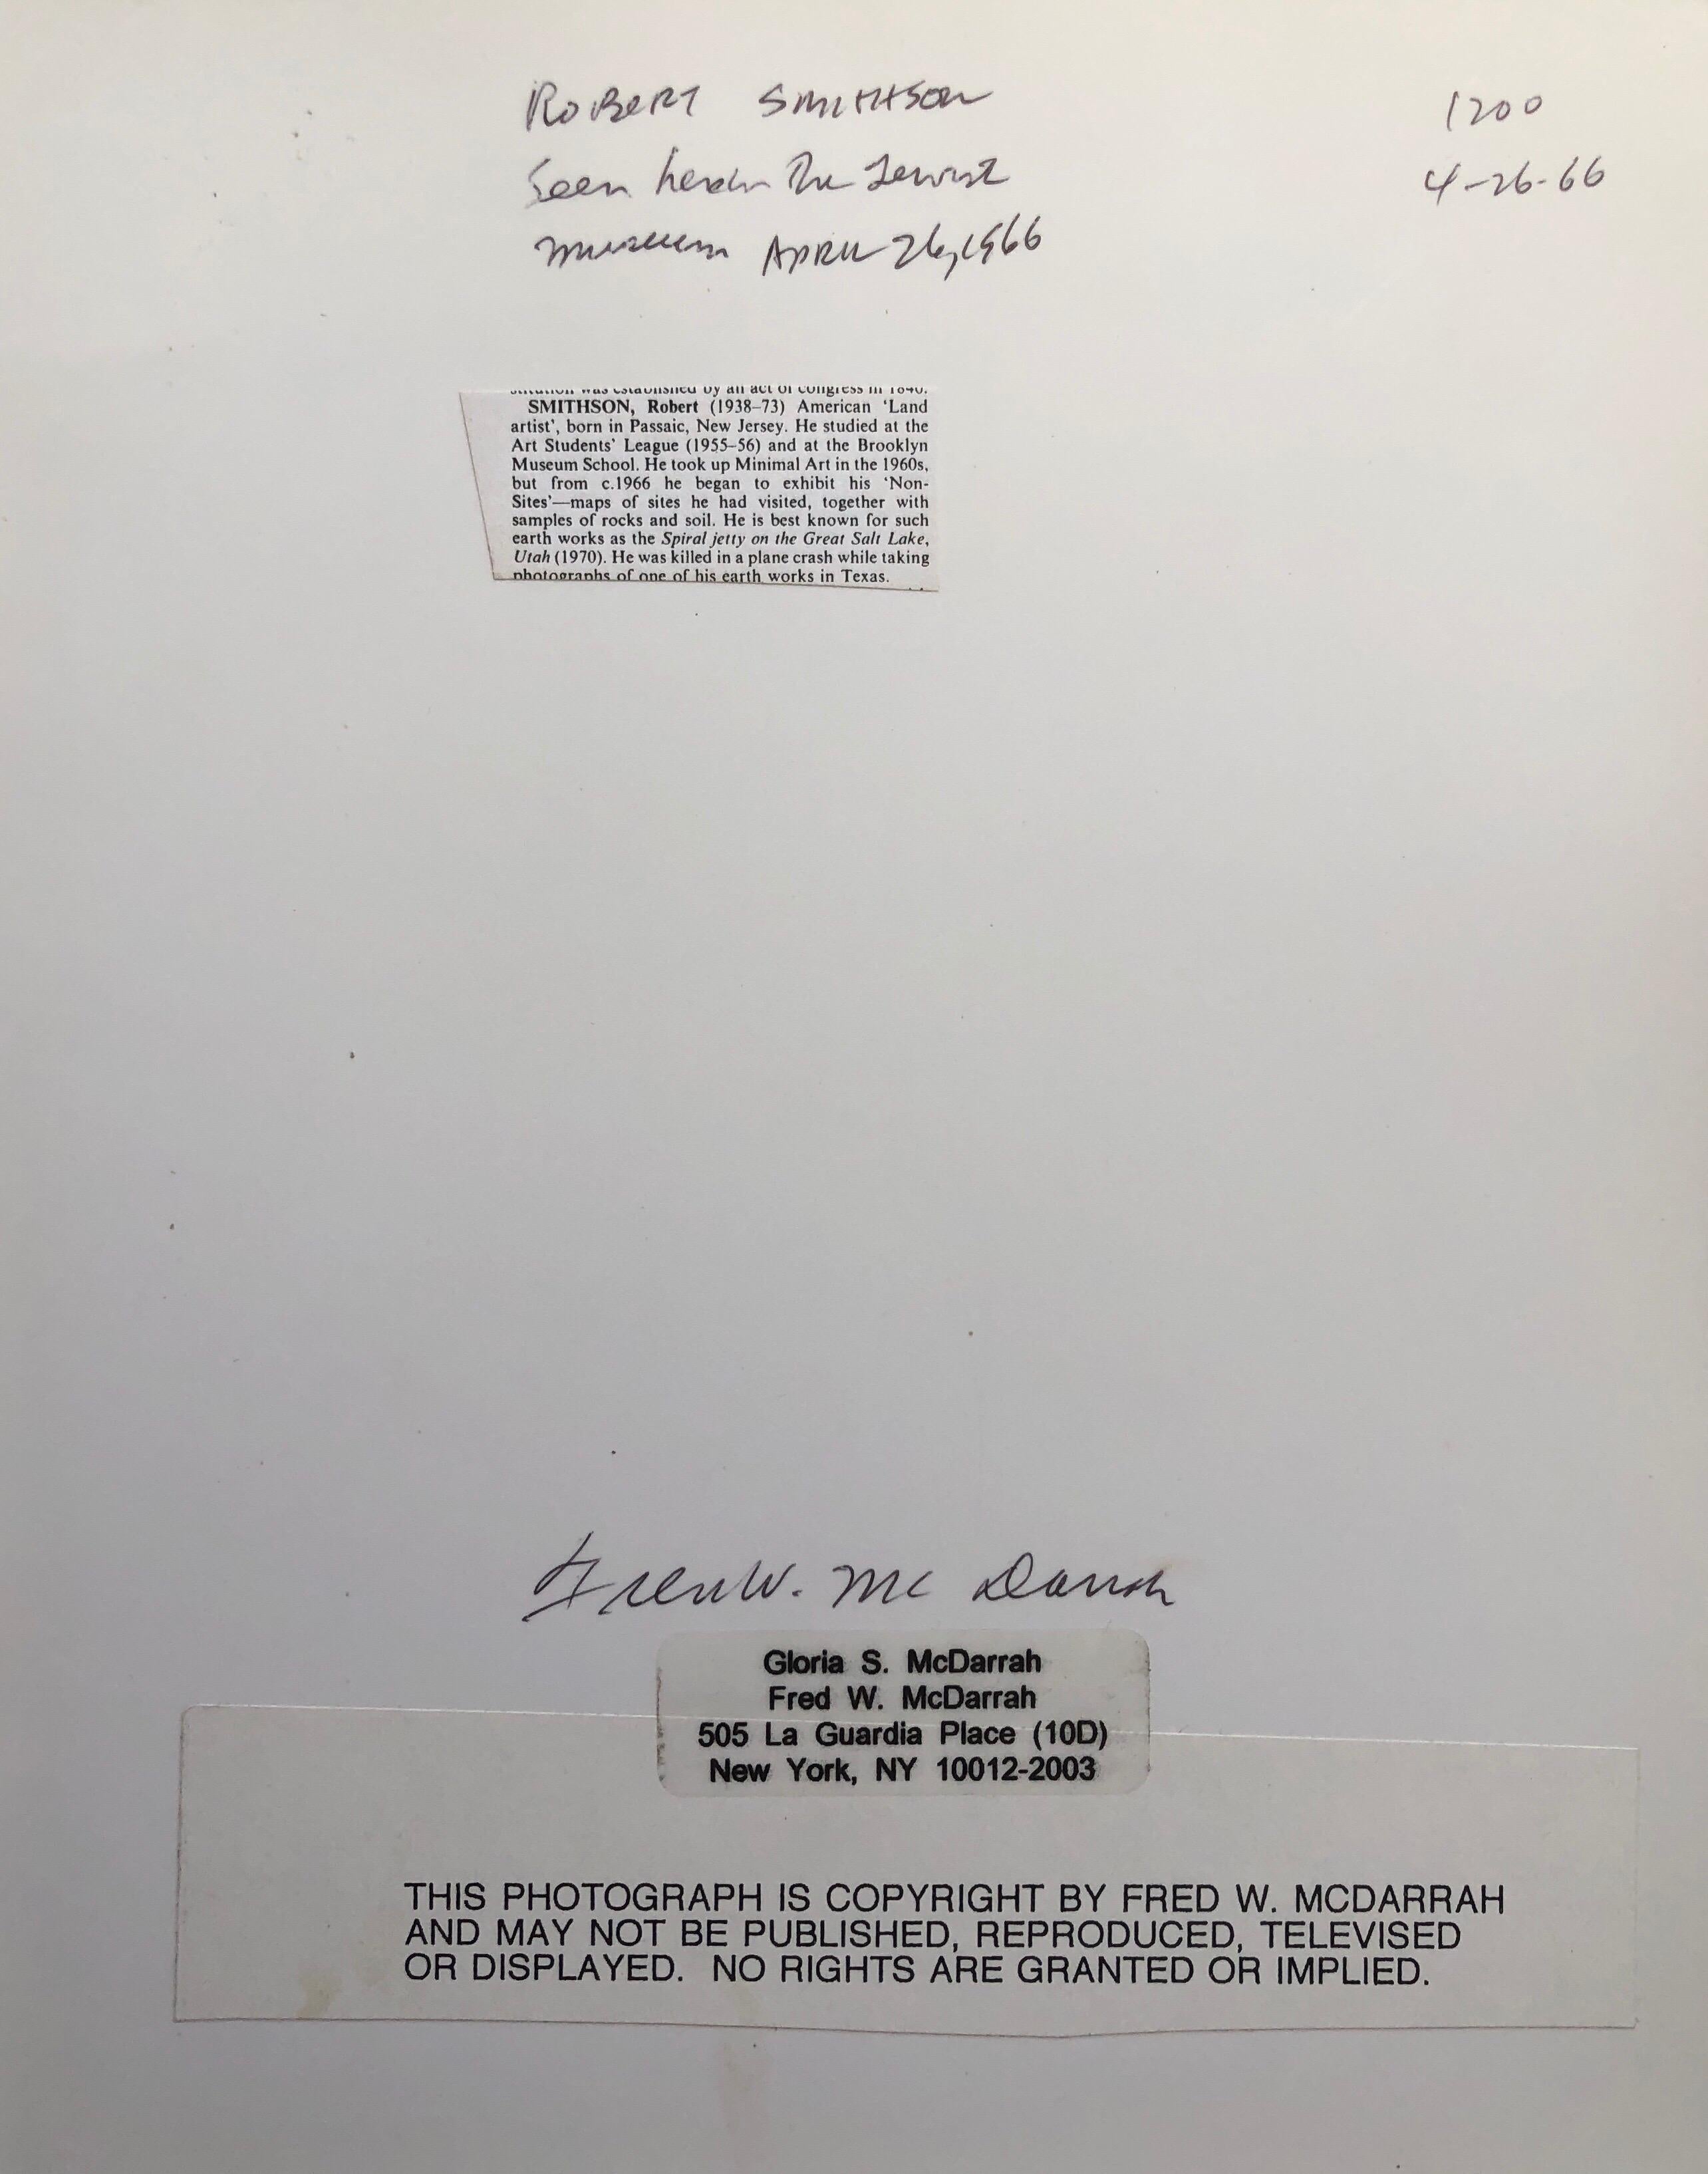 Vintage-Silber-Gelatine-Druck, signierte Fotografie, Robert Smithson Land Art Künstler, Vintage (Amerikanische Moderne), Photograph, von Fred McDarrah